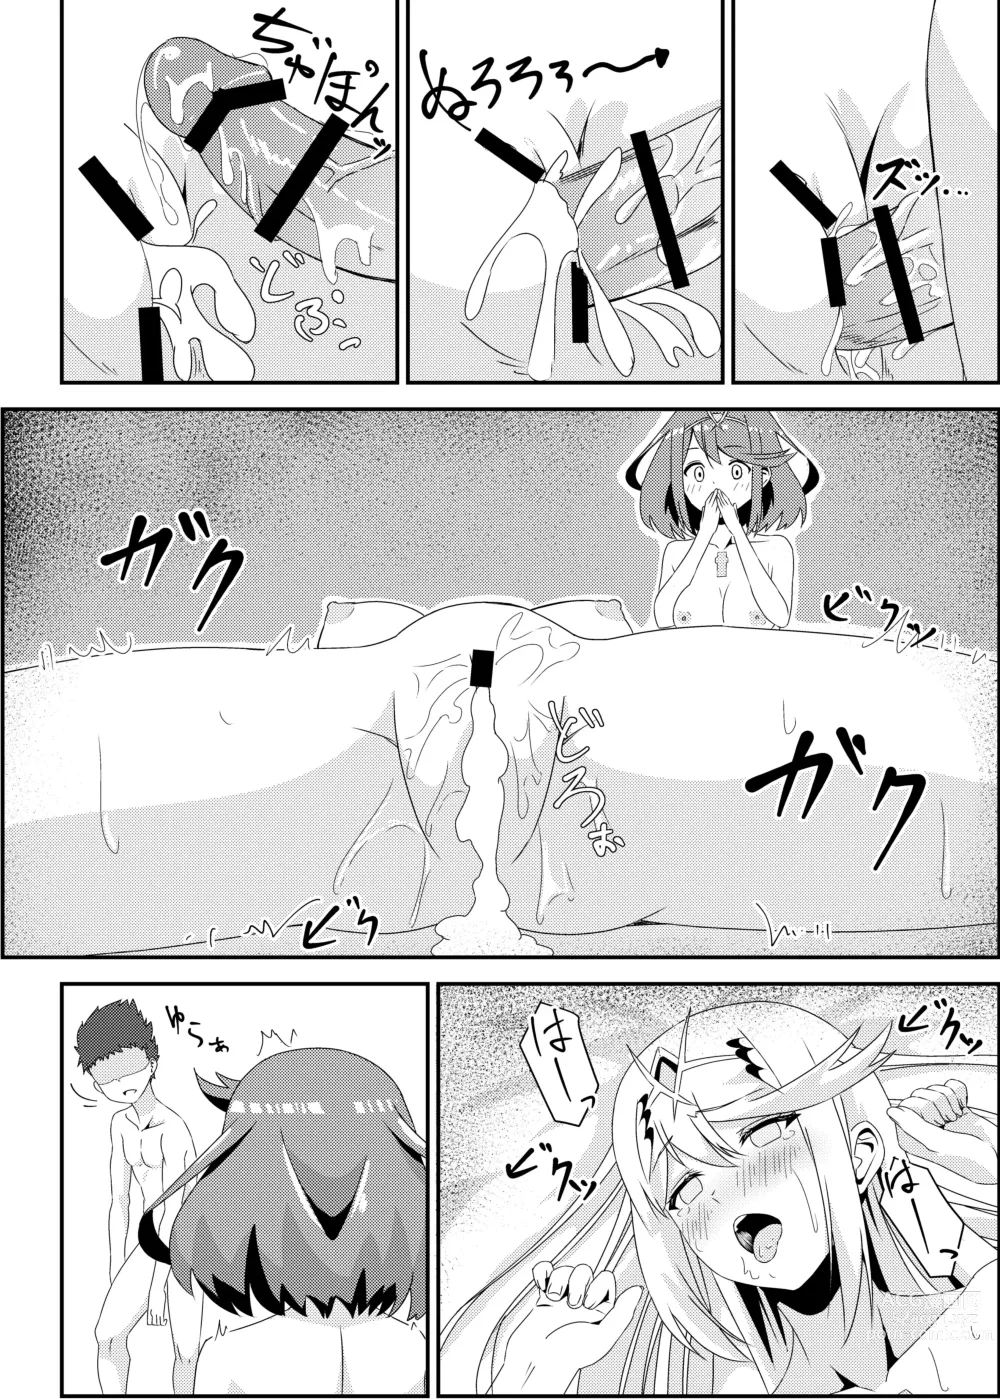 Page 48 of doujinshi Nyan Nyan Nia-chan 2